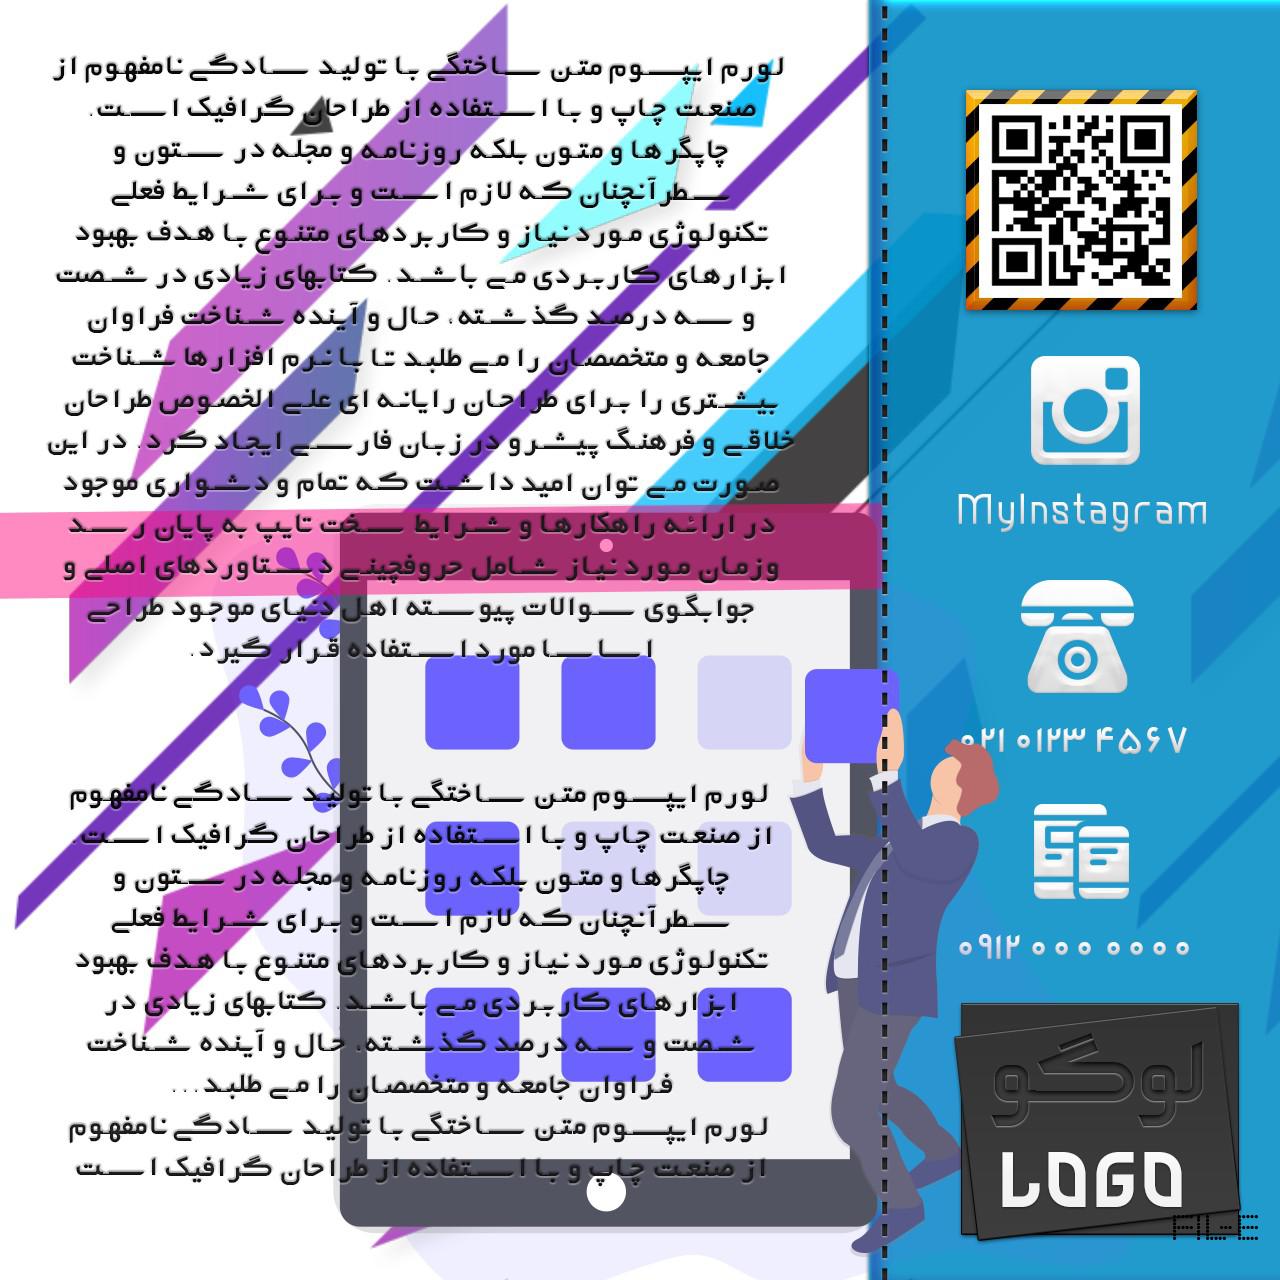 دانلود بنر اینستاگرام ۳۰، پست “قالب اختصاصی” اینستاگرام – دانلود بنر ویژه و مناسبتی ، طراحی فارسی